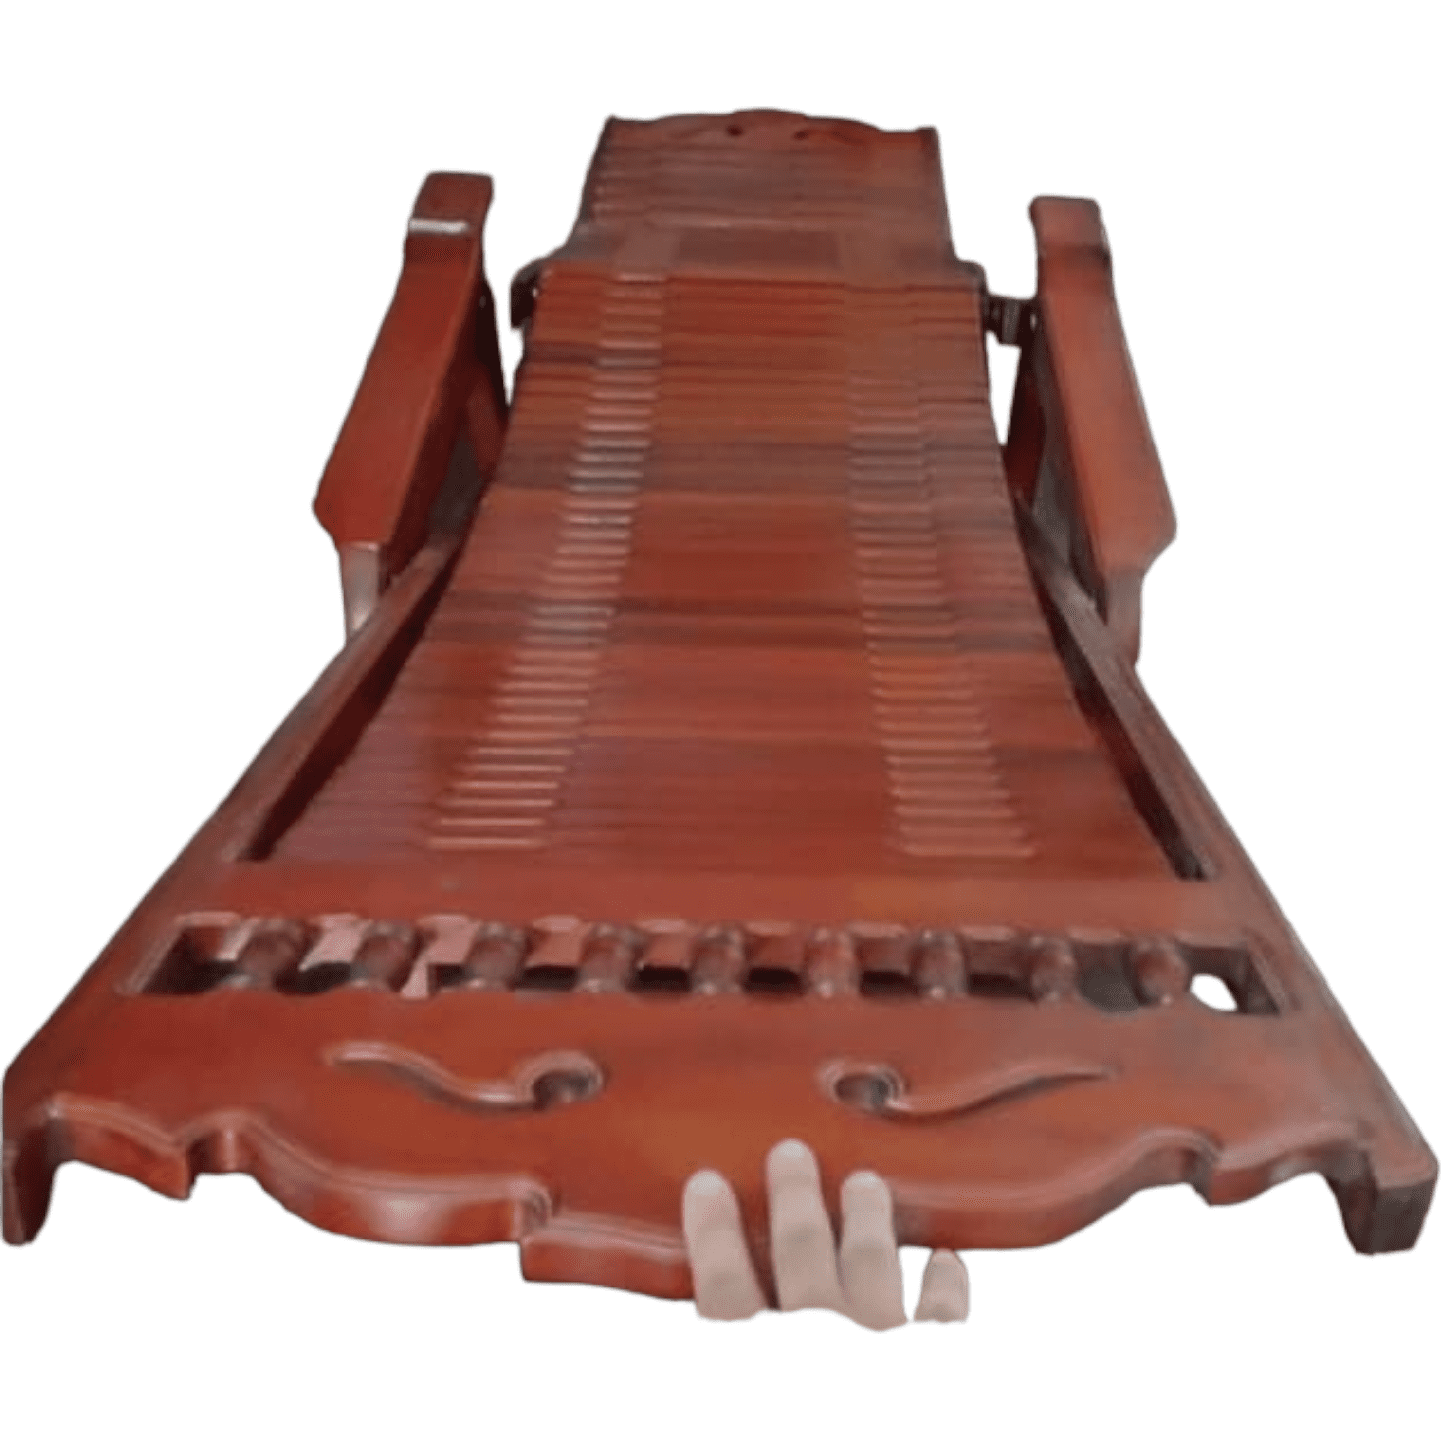 Hardwood recliner